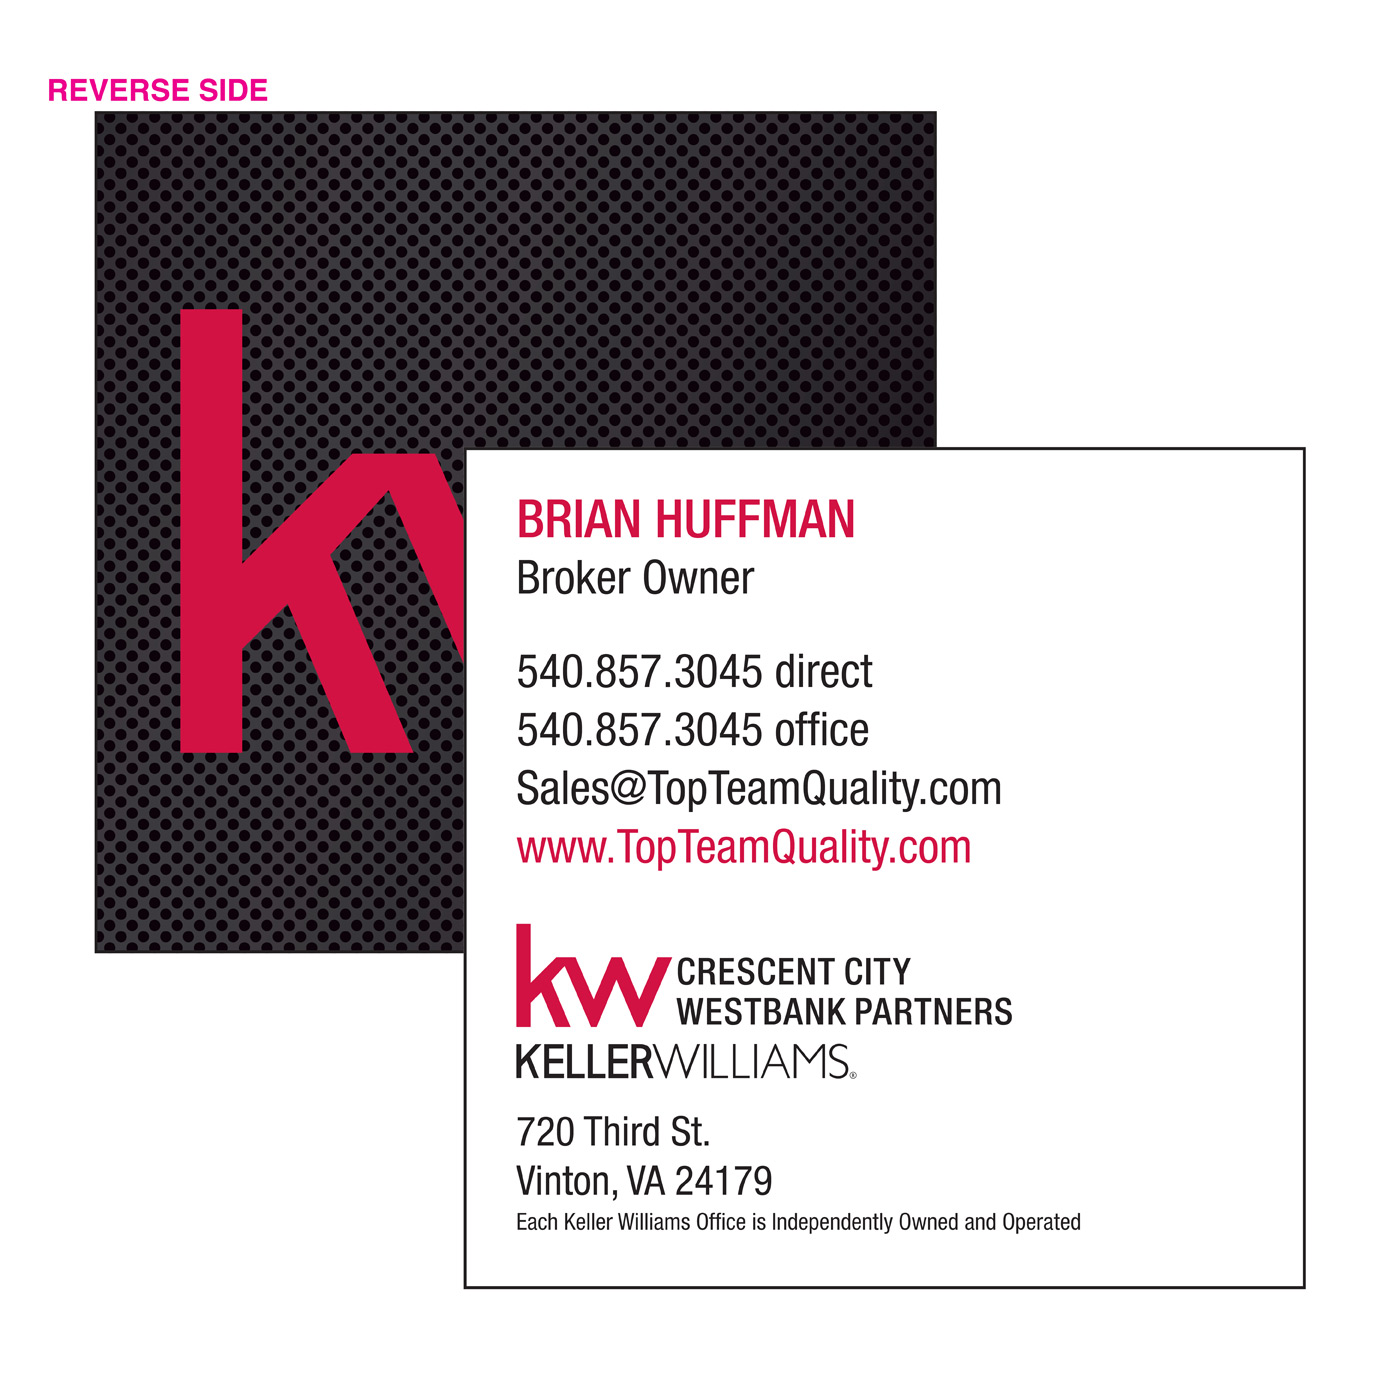 Keller William Square Business Card